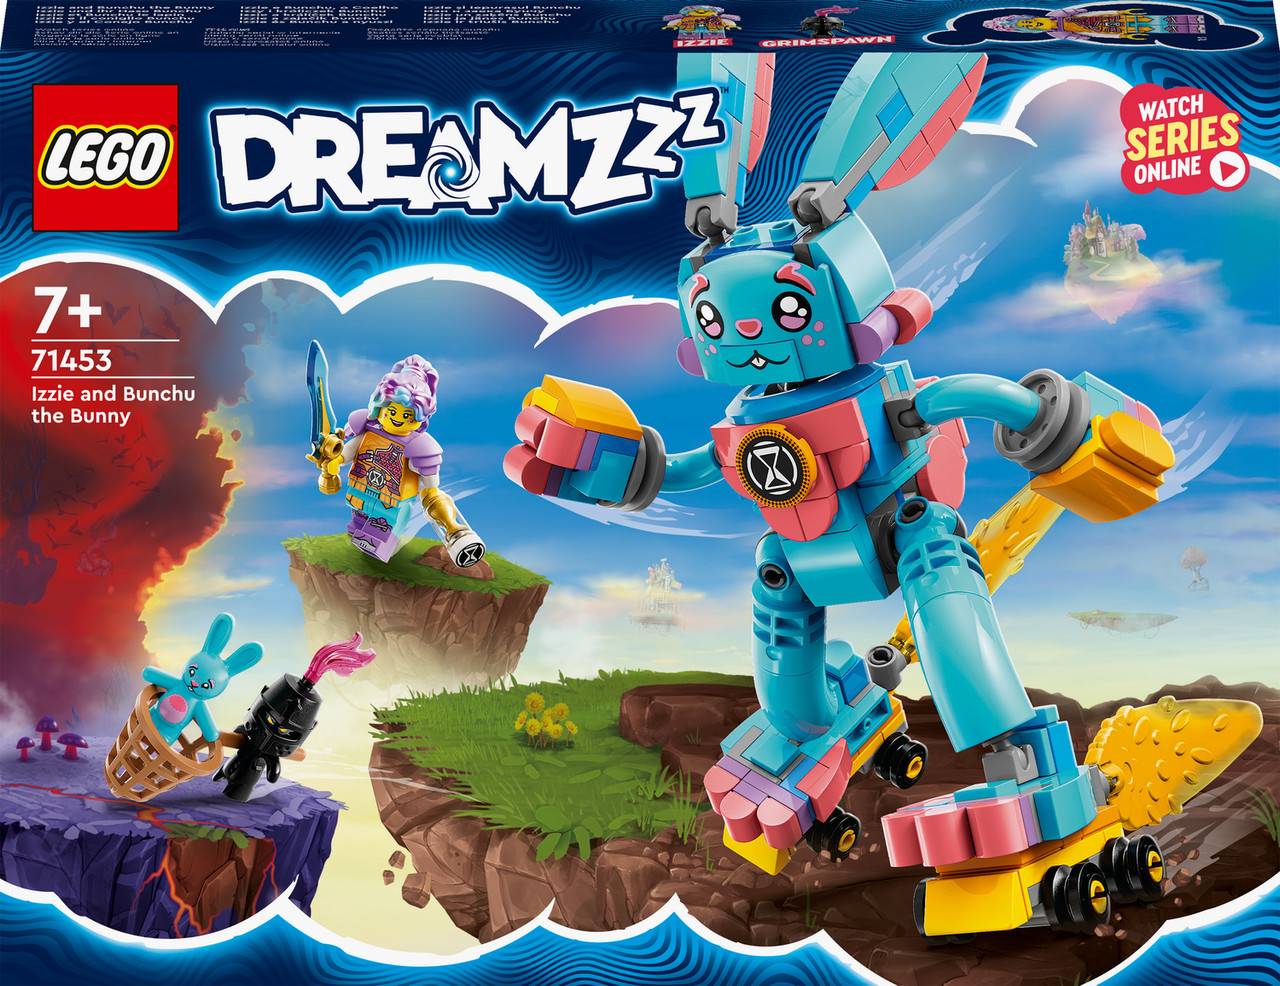 LEGO DREAMZzz Izzie and Bunchu the Bunny Toy 2